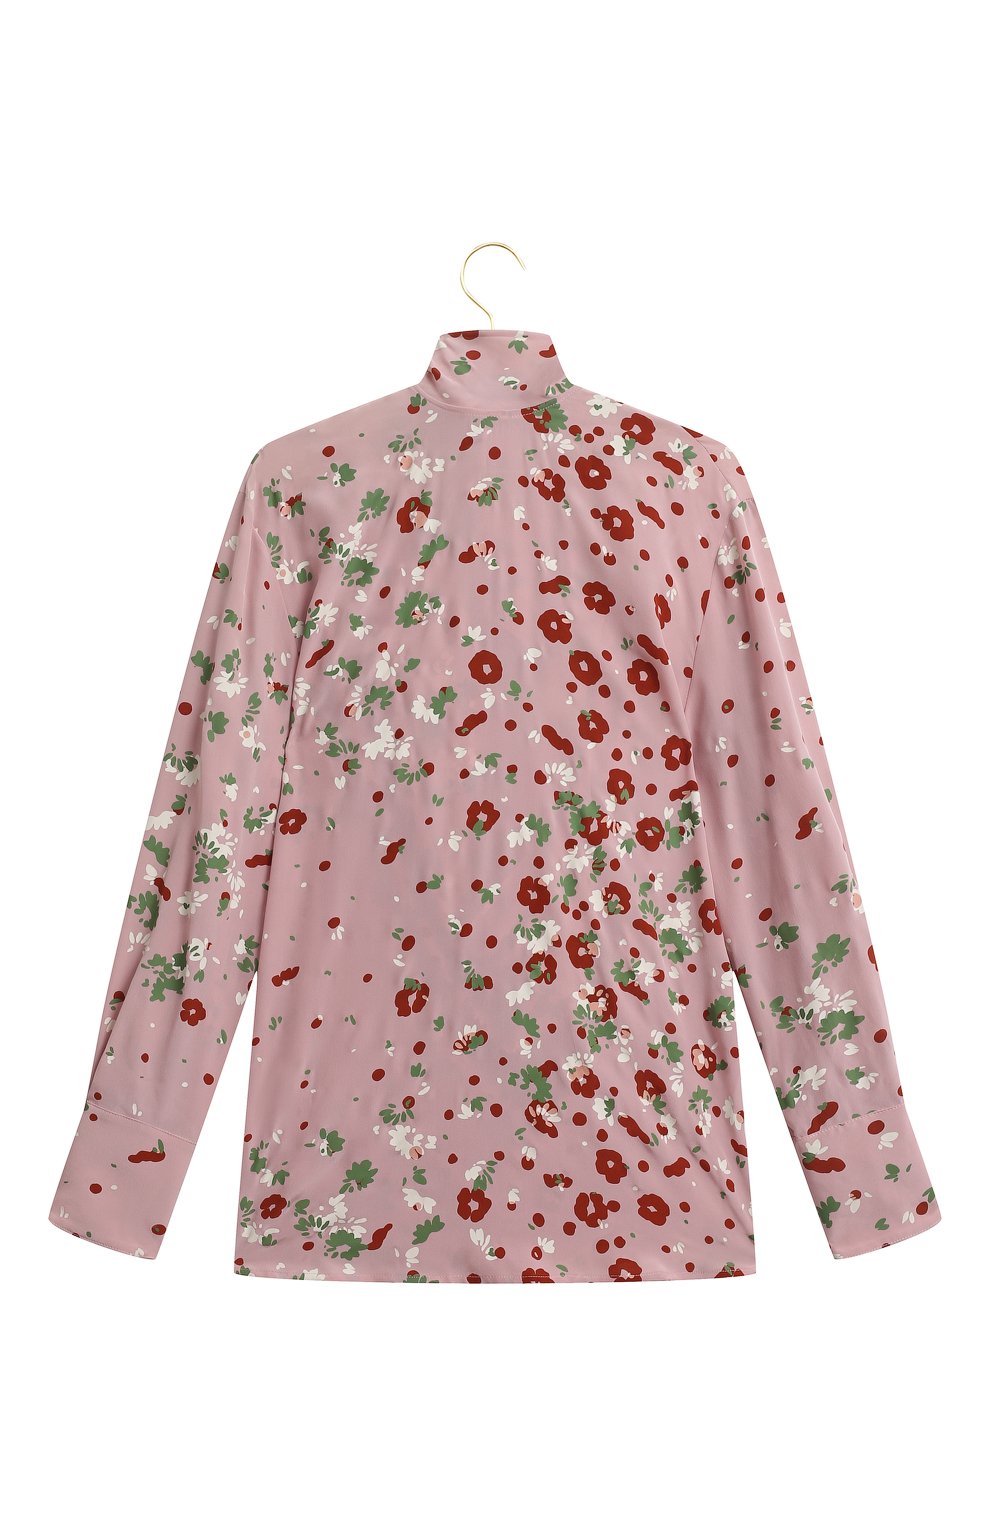 Шелковая блузка | Valentino | Розовый - 2